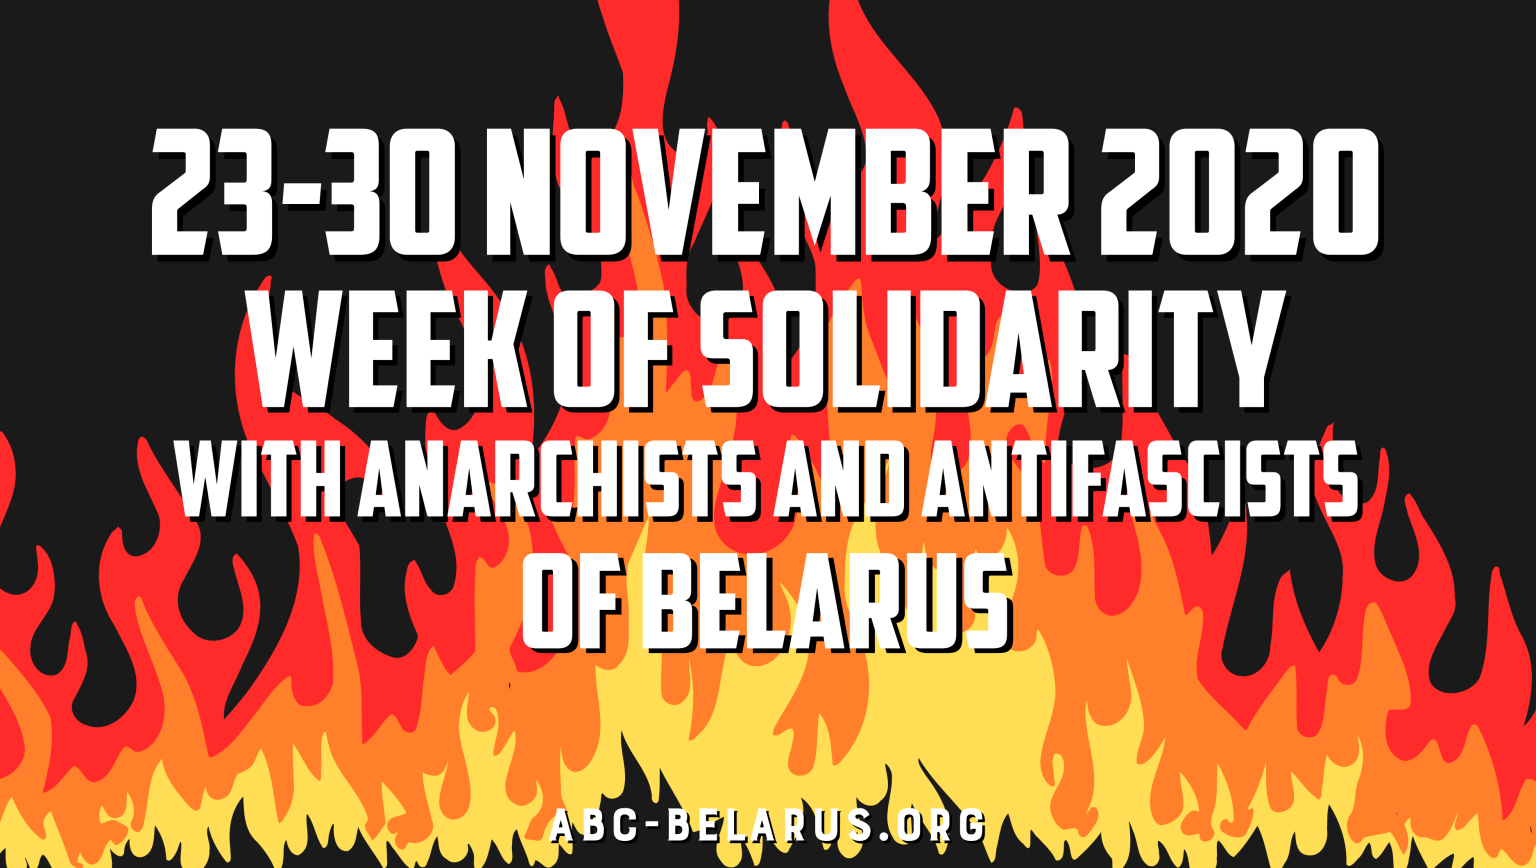 Belaruslu anarşistler ve antifaşistlerle dayanışmak için uluslararası eylem haftası çağrısı